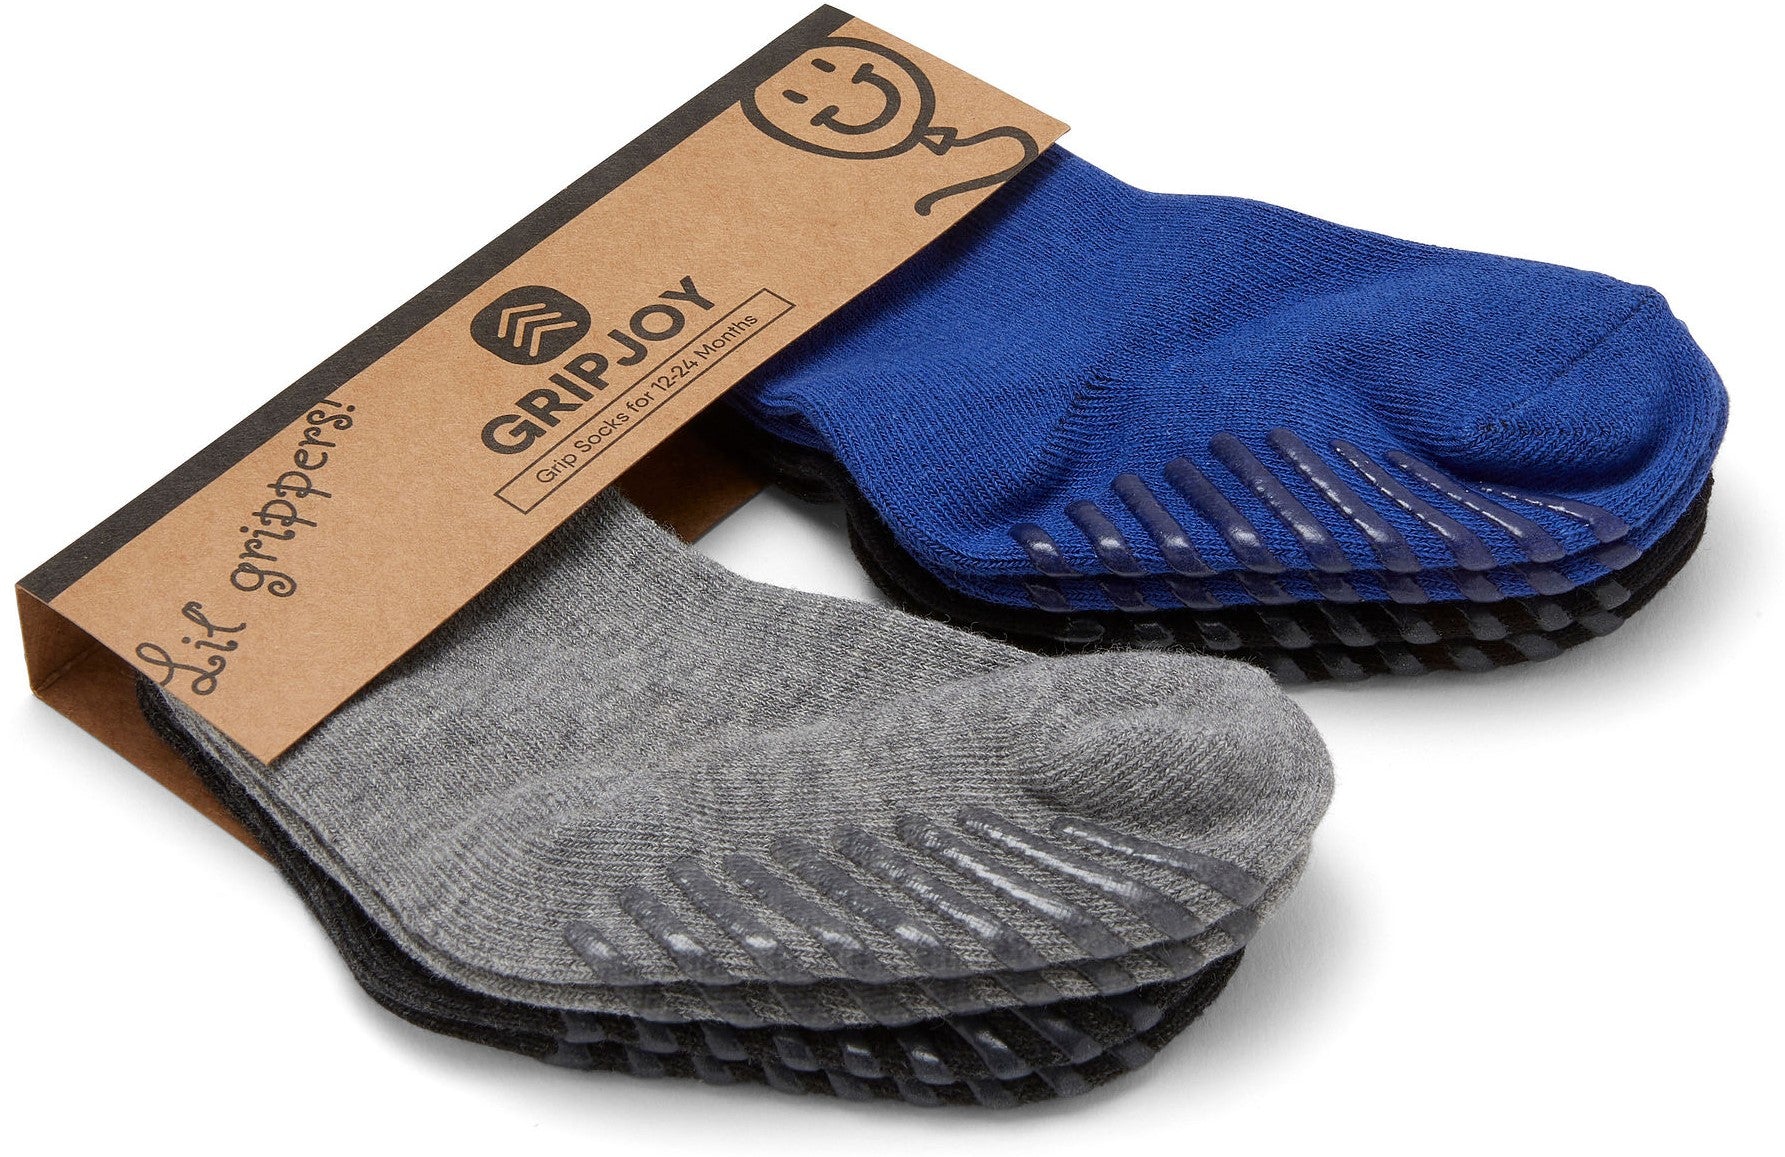 Grip Socks -  Canada